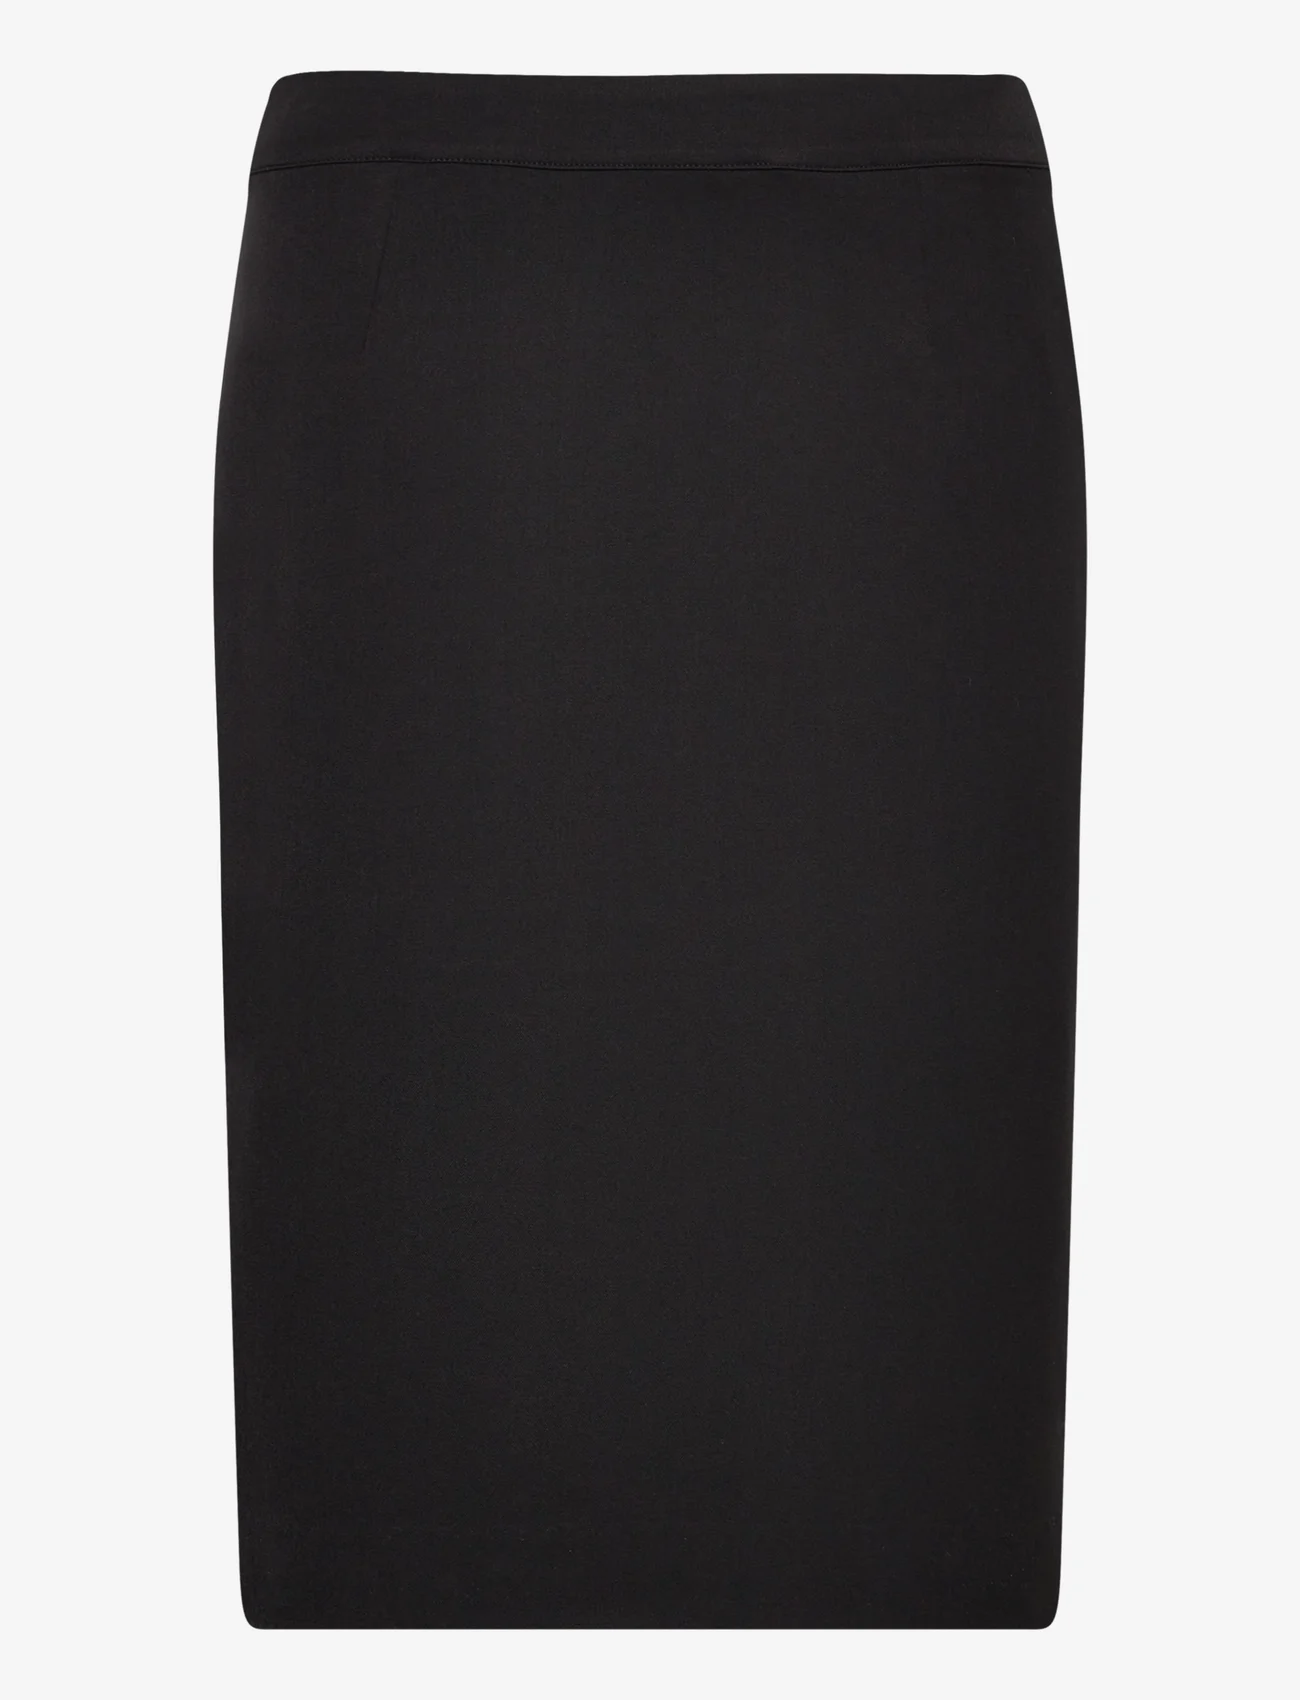 Rosemunde - Skirt - pieštuko formos sijonai - black - 0